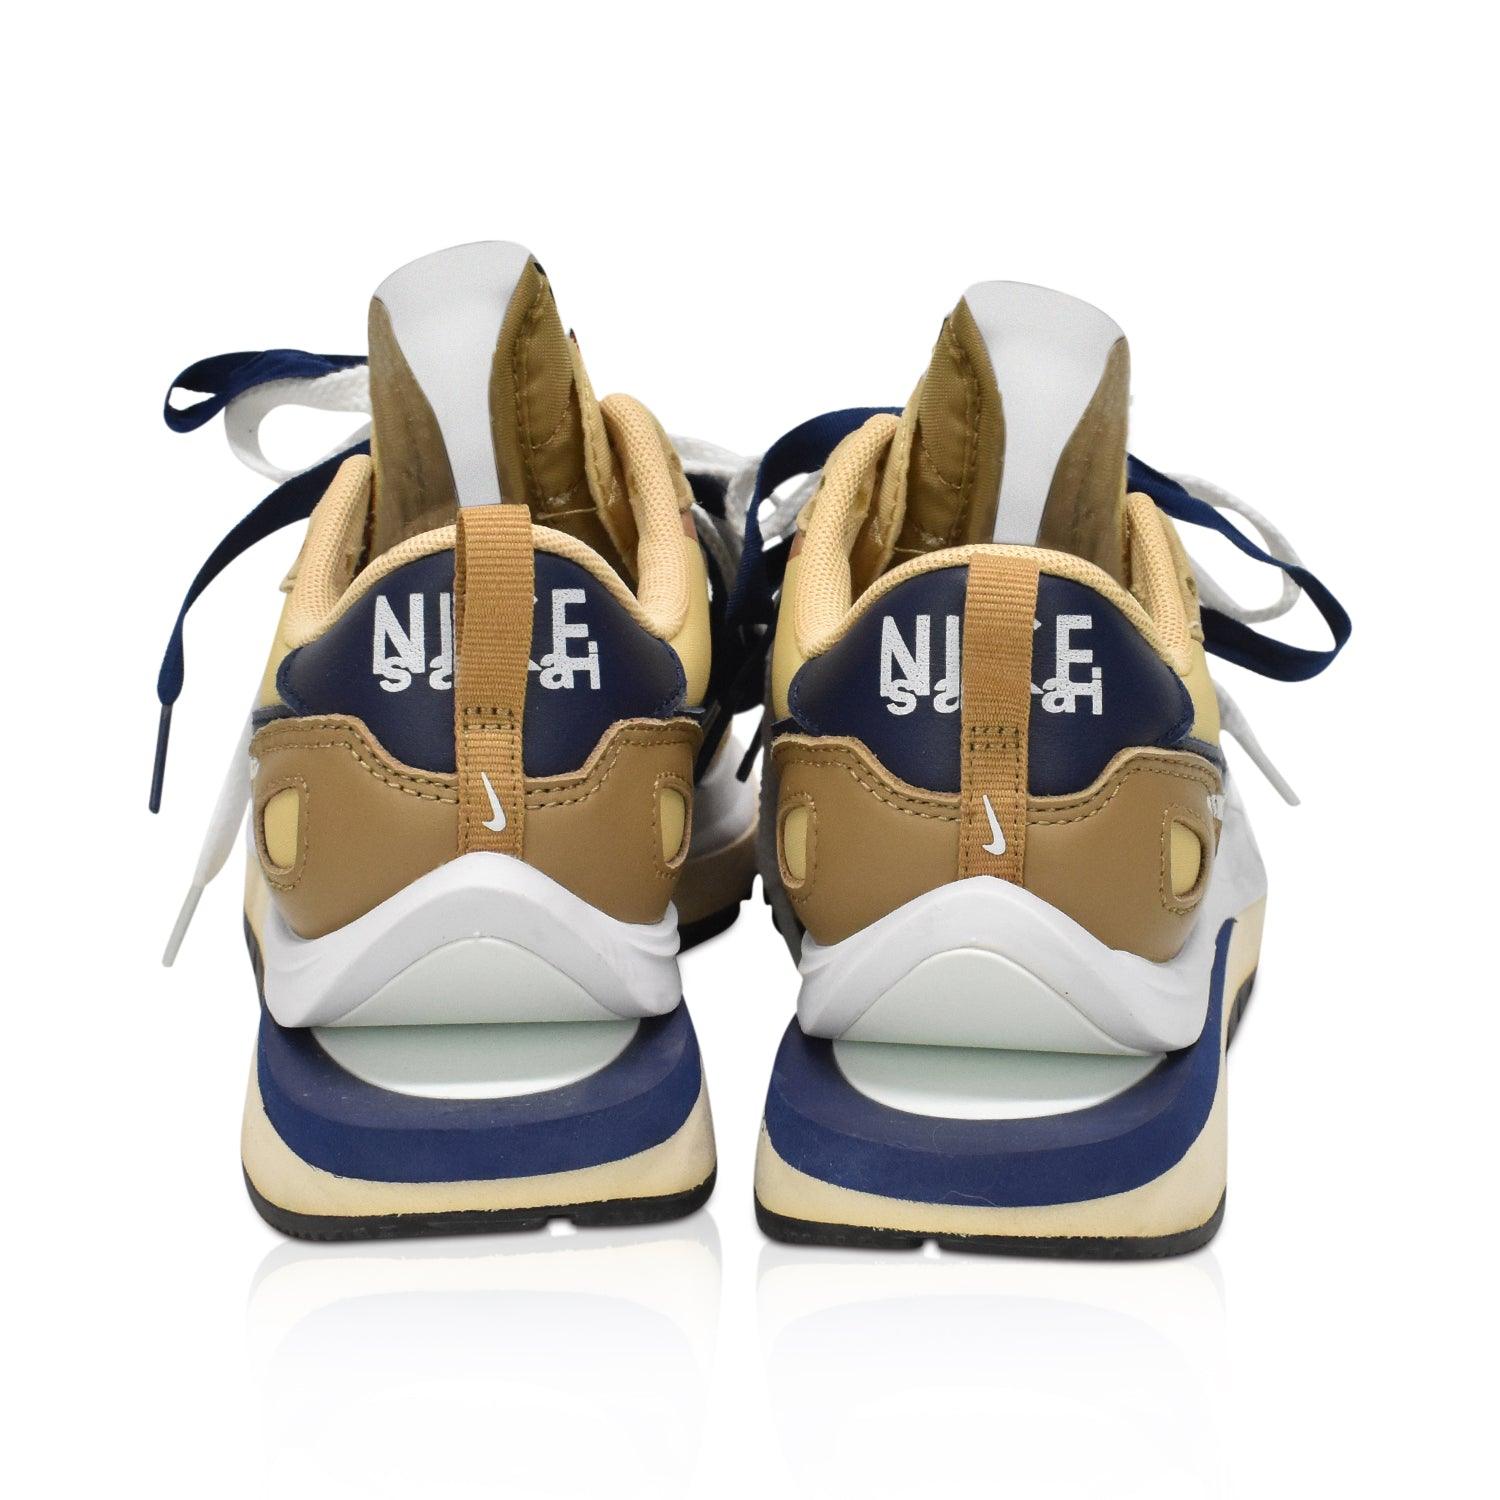 Nike x Sacai 'Vaporwaffle' Sneakers - Women's 6.5 - Fashionably Yours